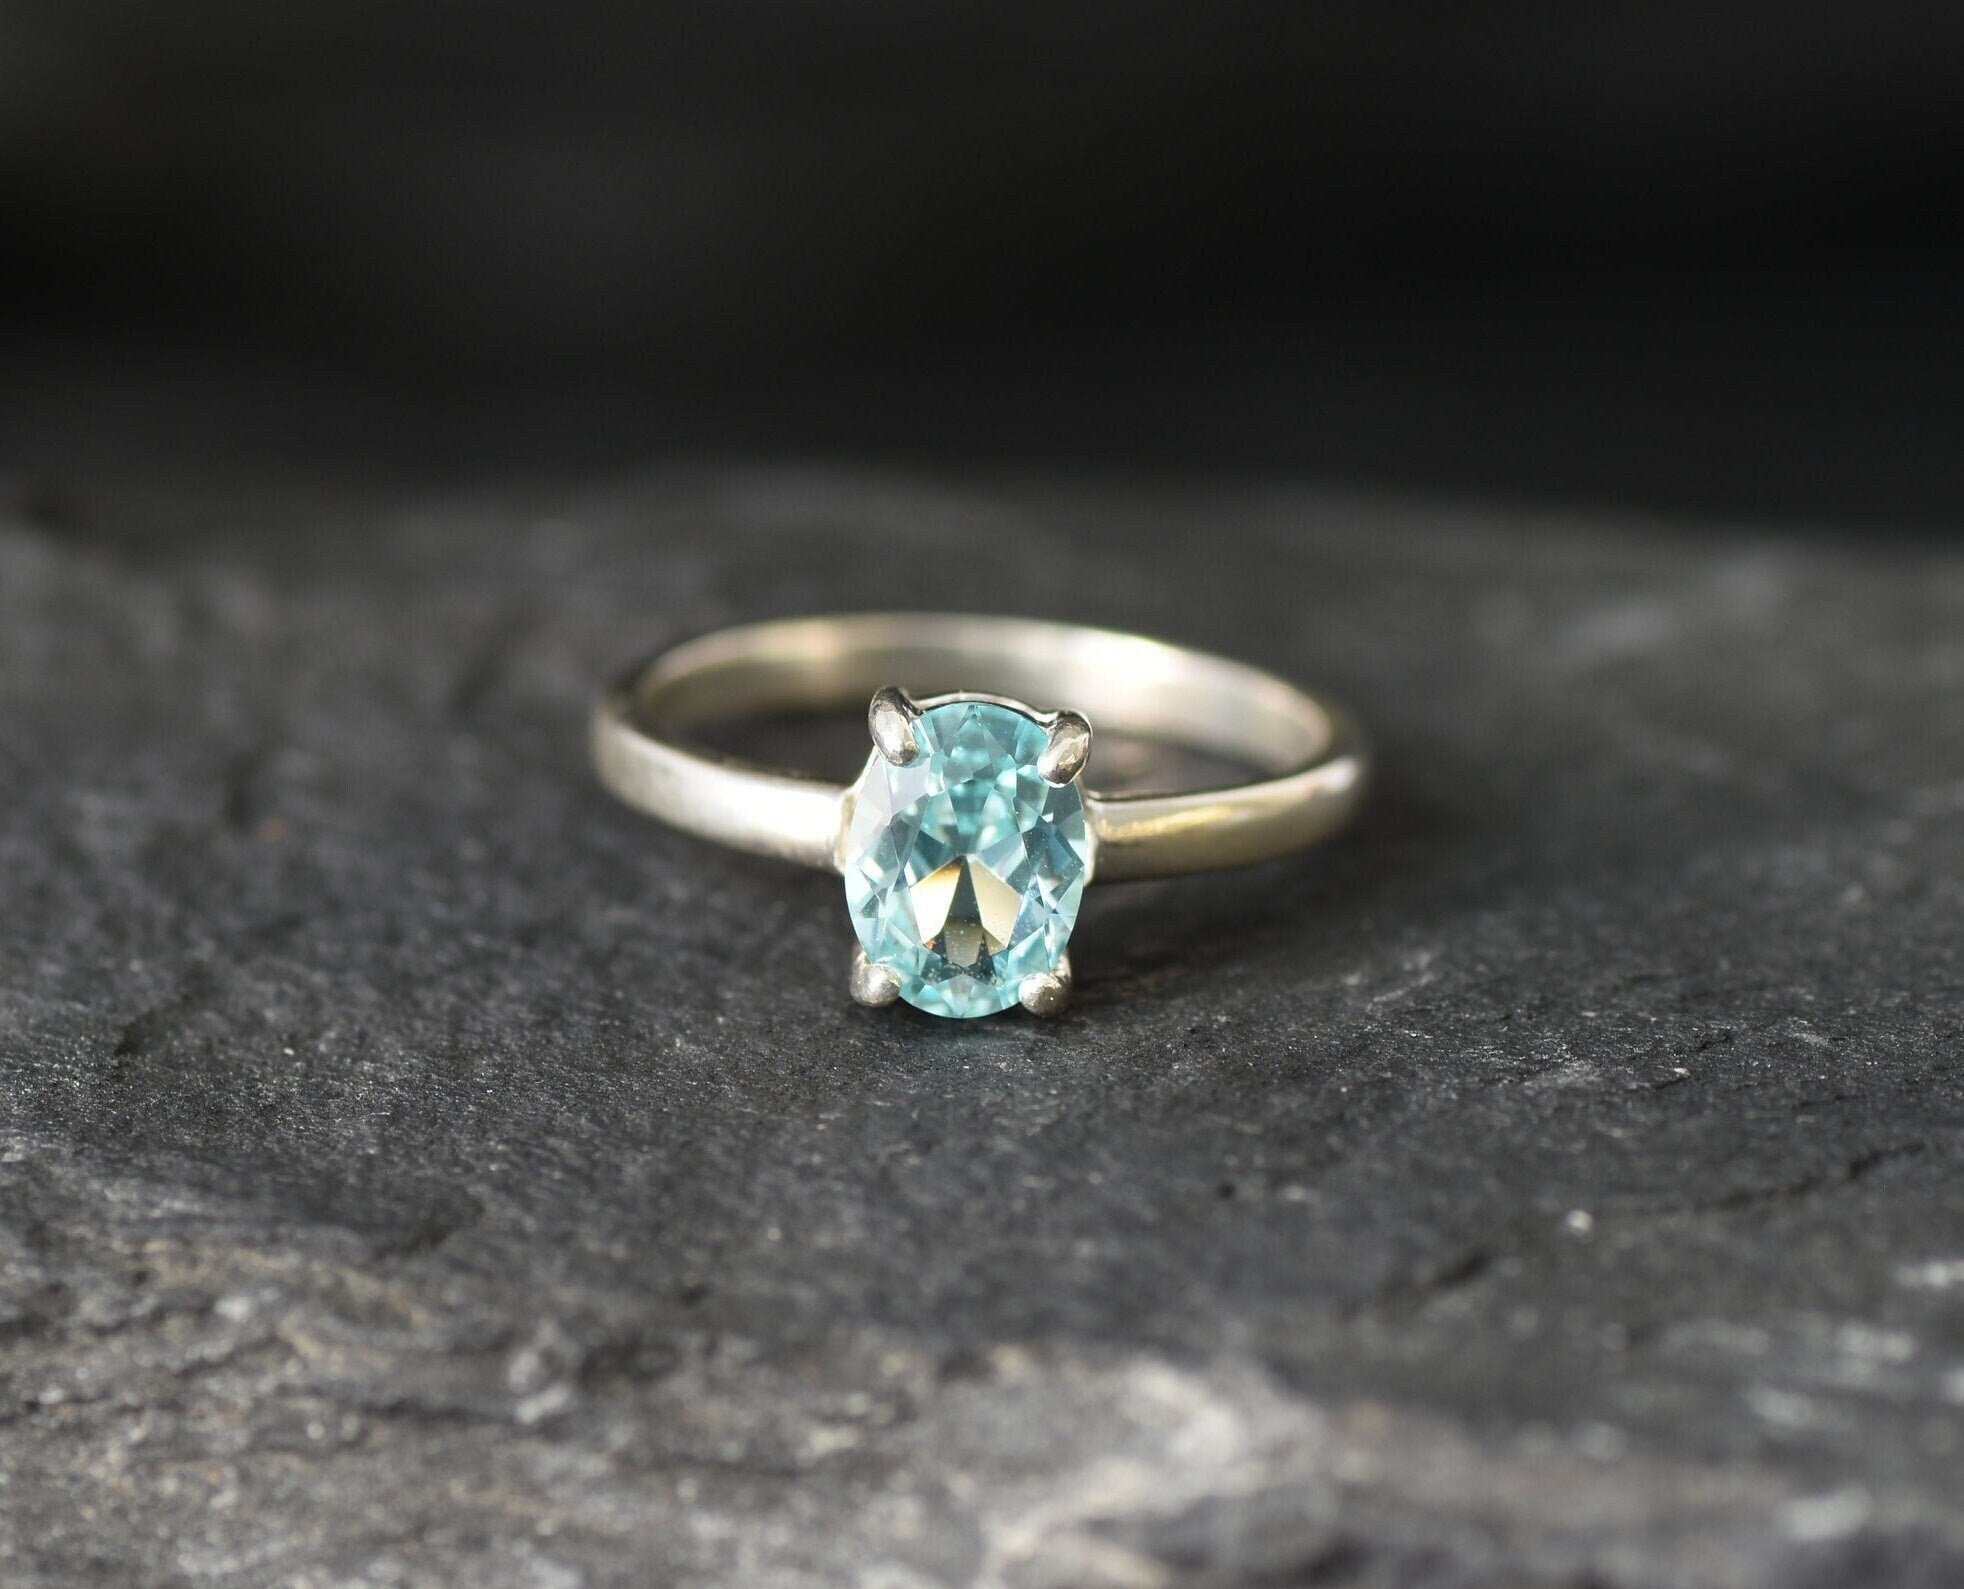 Aquamarine Ring, Created Aquamarine, Blue Solitaire Ring, Blue Diamond Ring, Promise Ring, Solitaire Ring, 925 Sterling Silver, Aquamarine